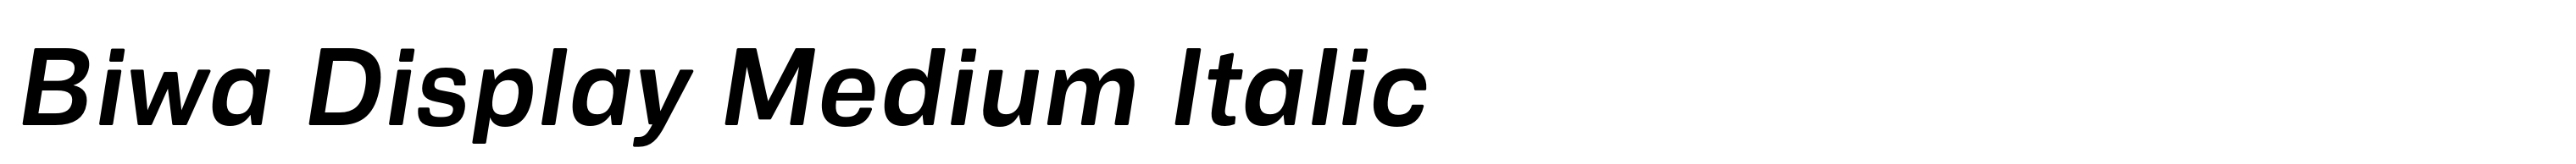 Biwa Display Medium Italic